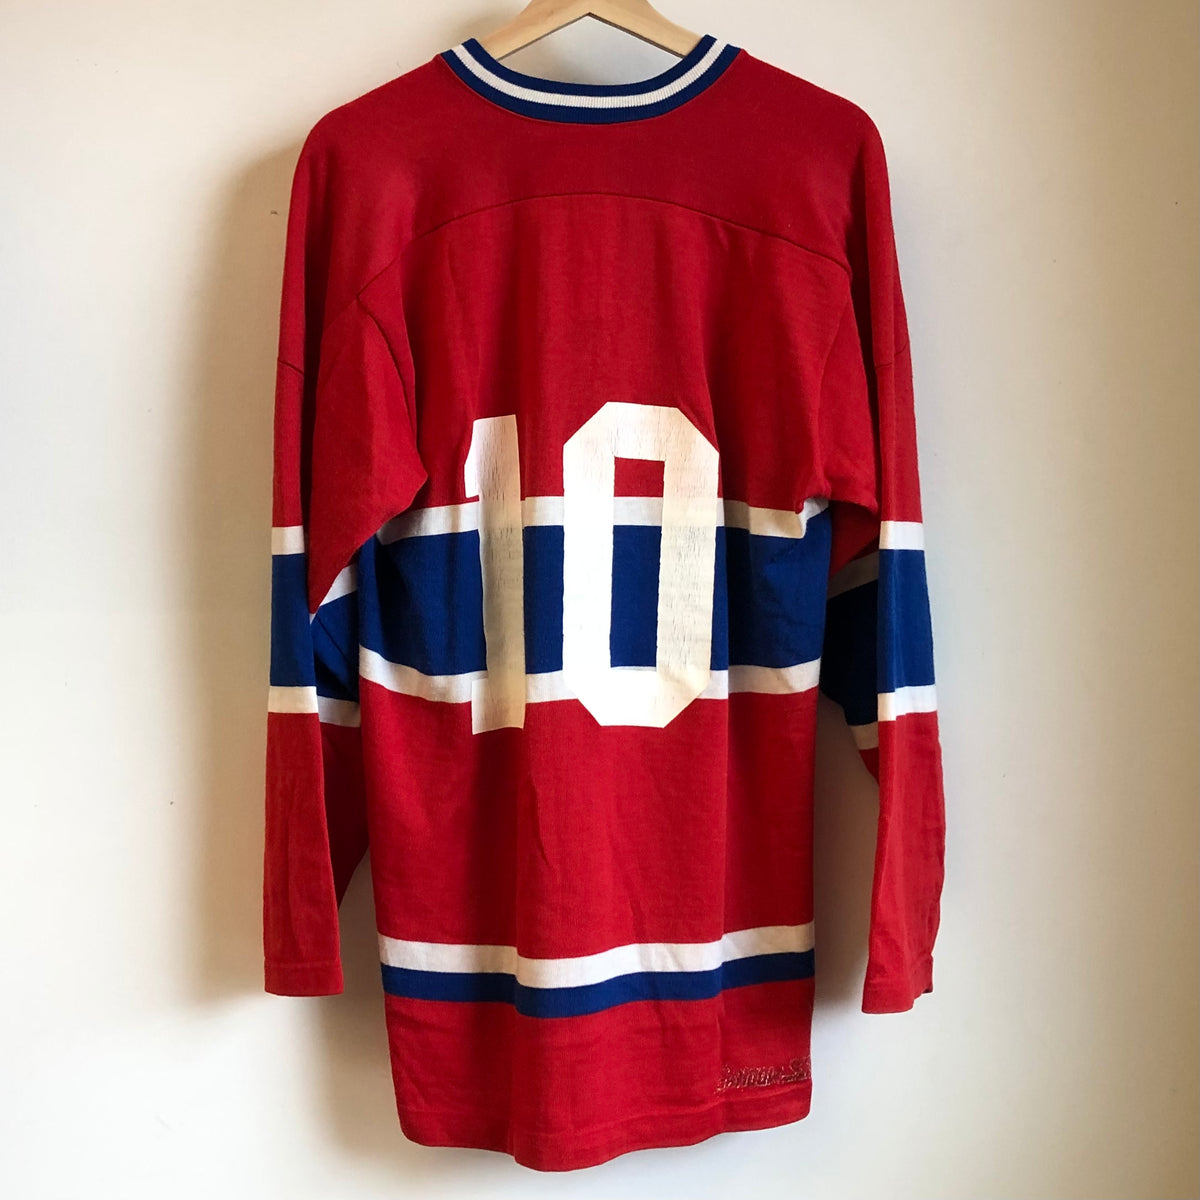 Montreal Canadiens Apparel, Canadiens Gear, Montreal Canadiens